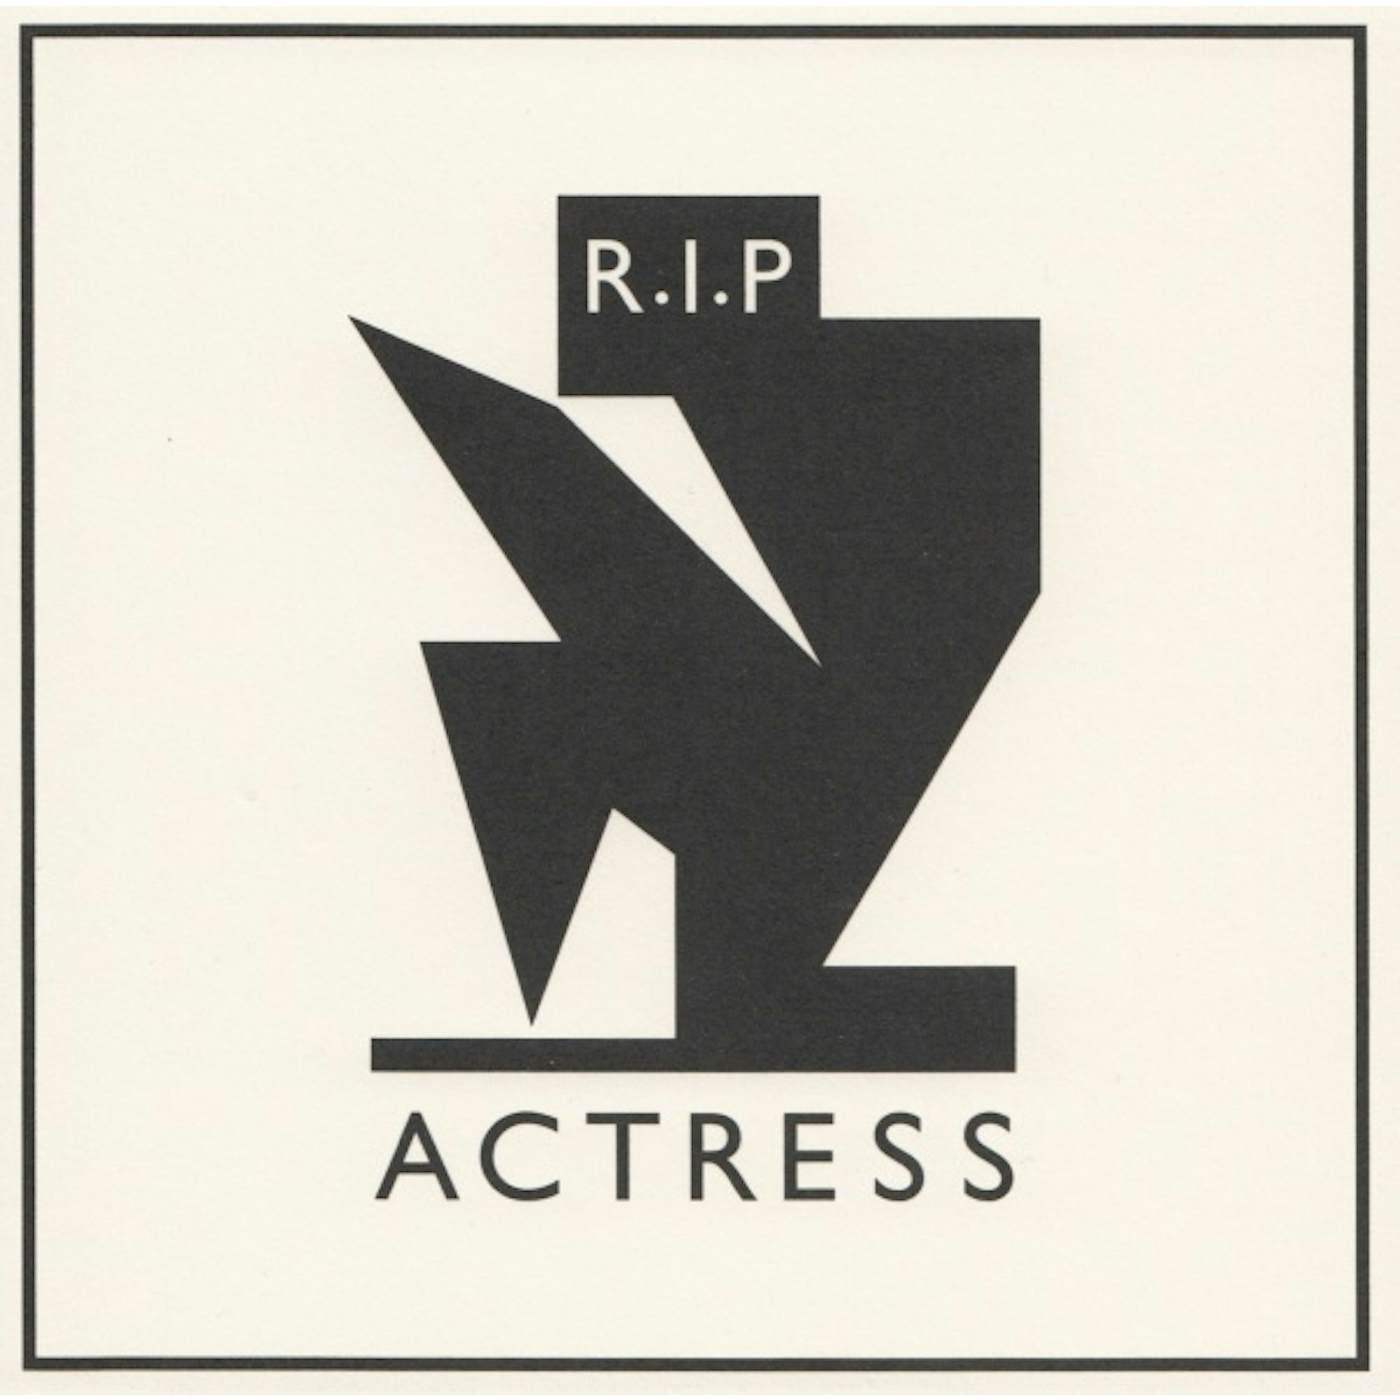 Actress R.I.P. Vinyl Record